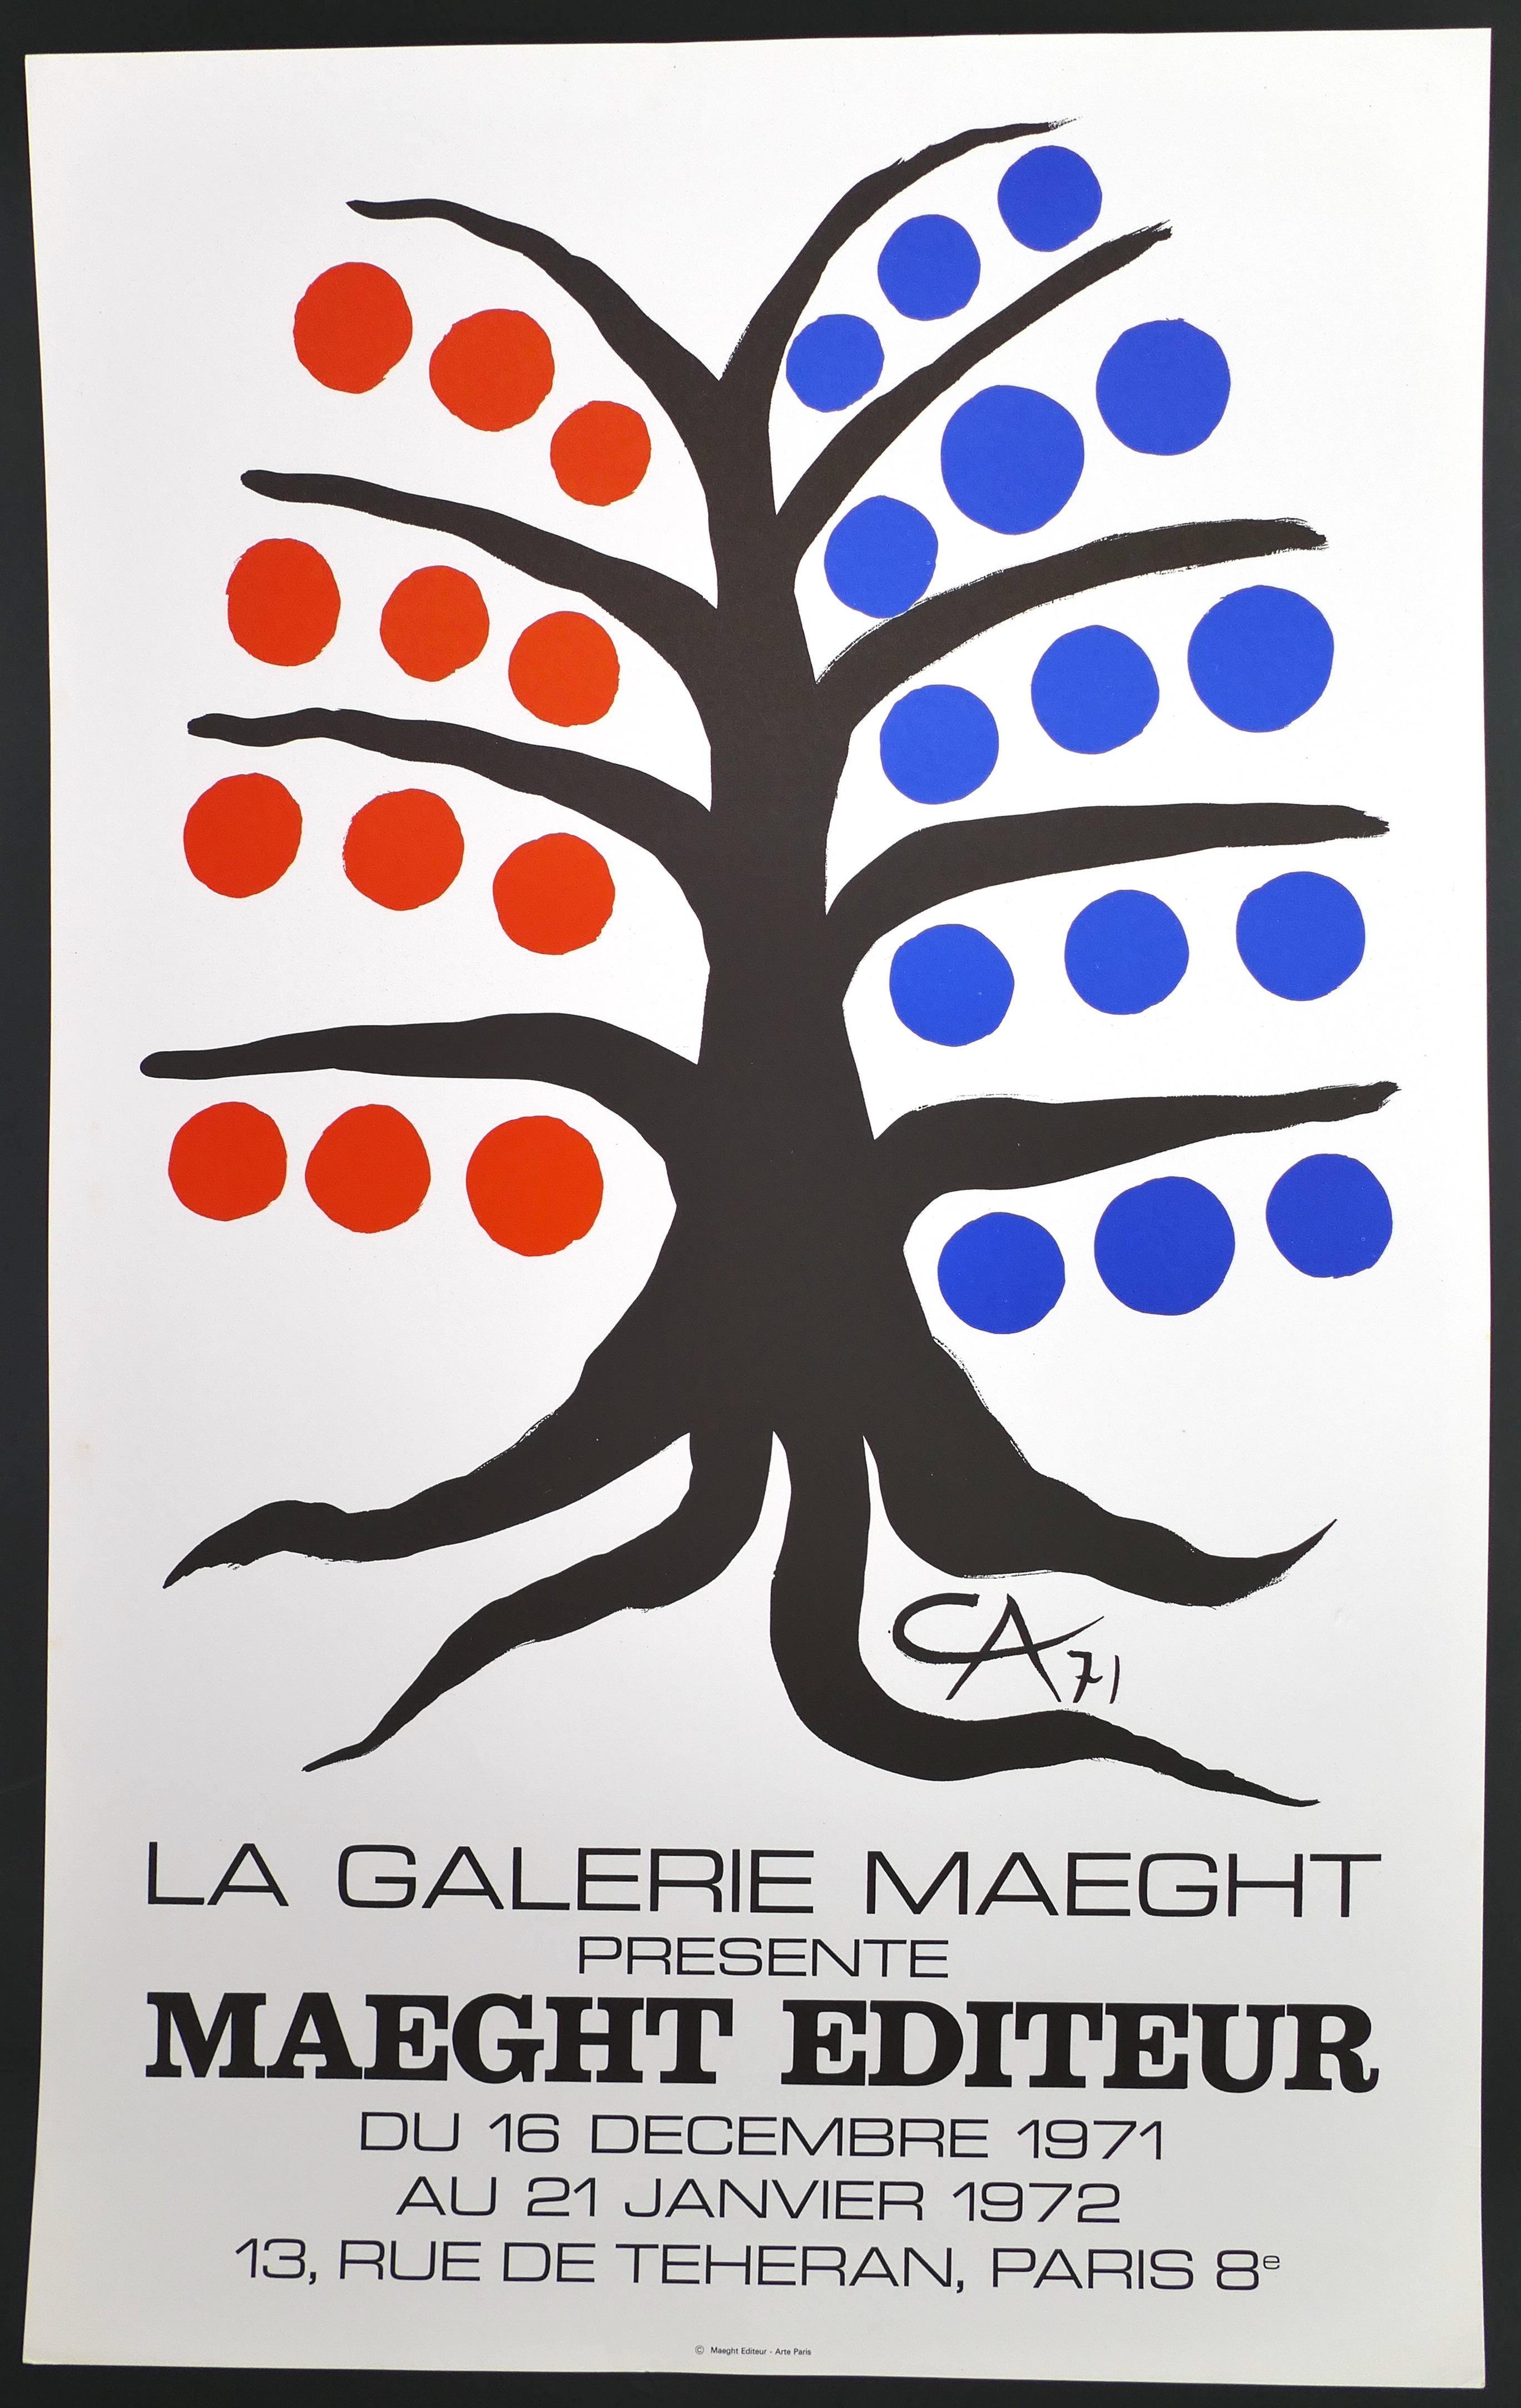 Alexander Calder Abstract Print - La Galerie Maeght présente Maeght - Vintage Poster - after A. Calder - 1971